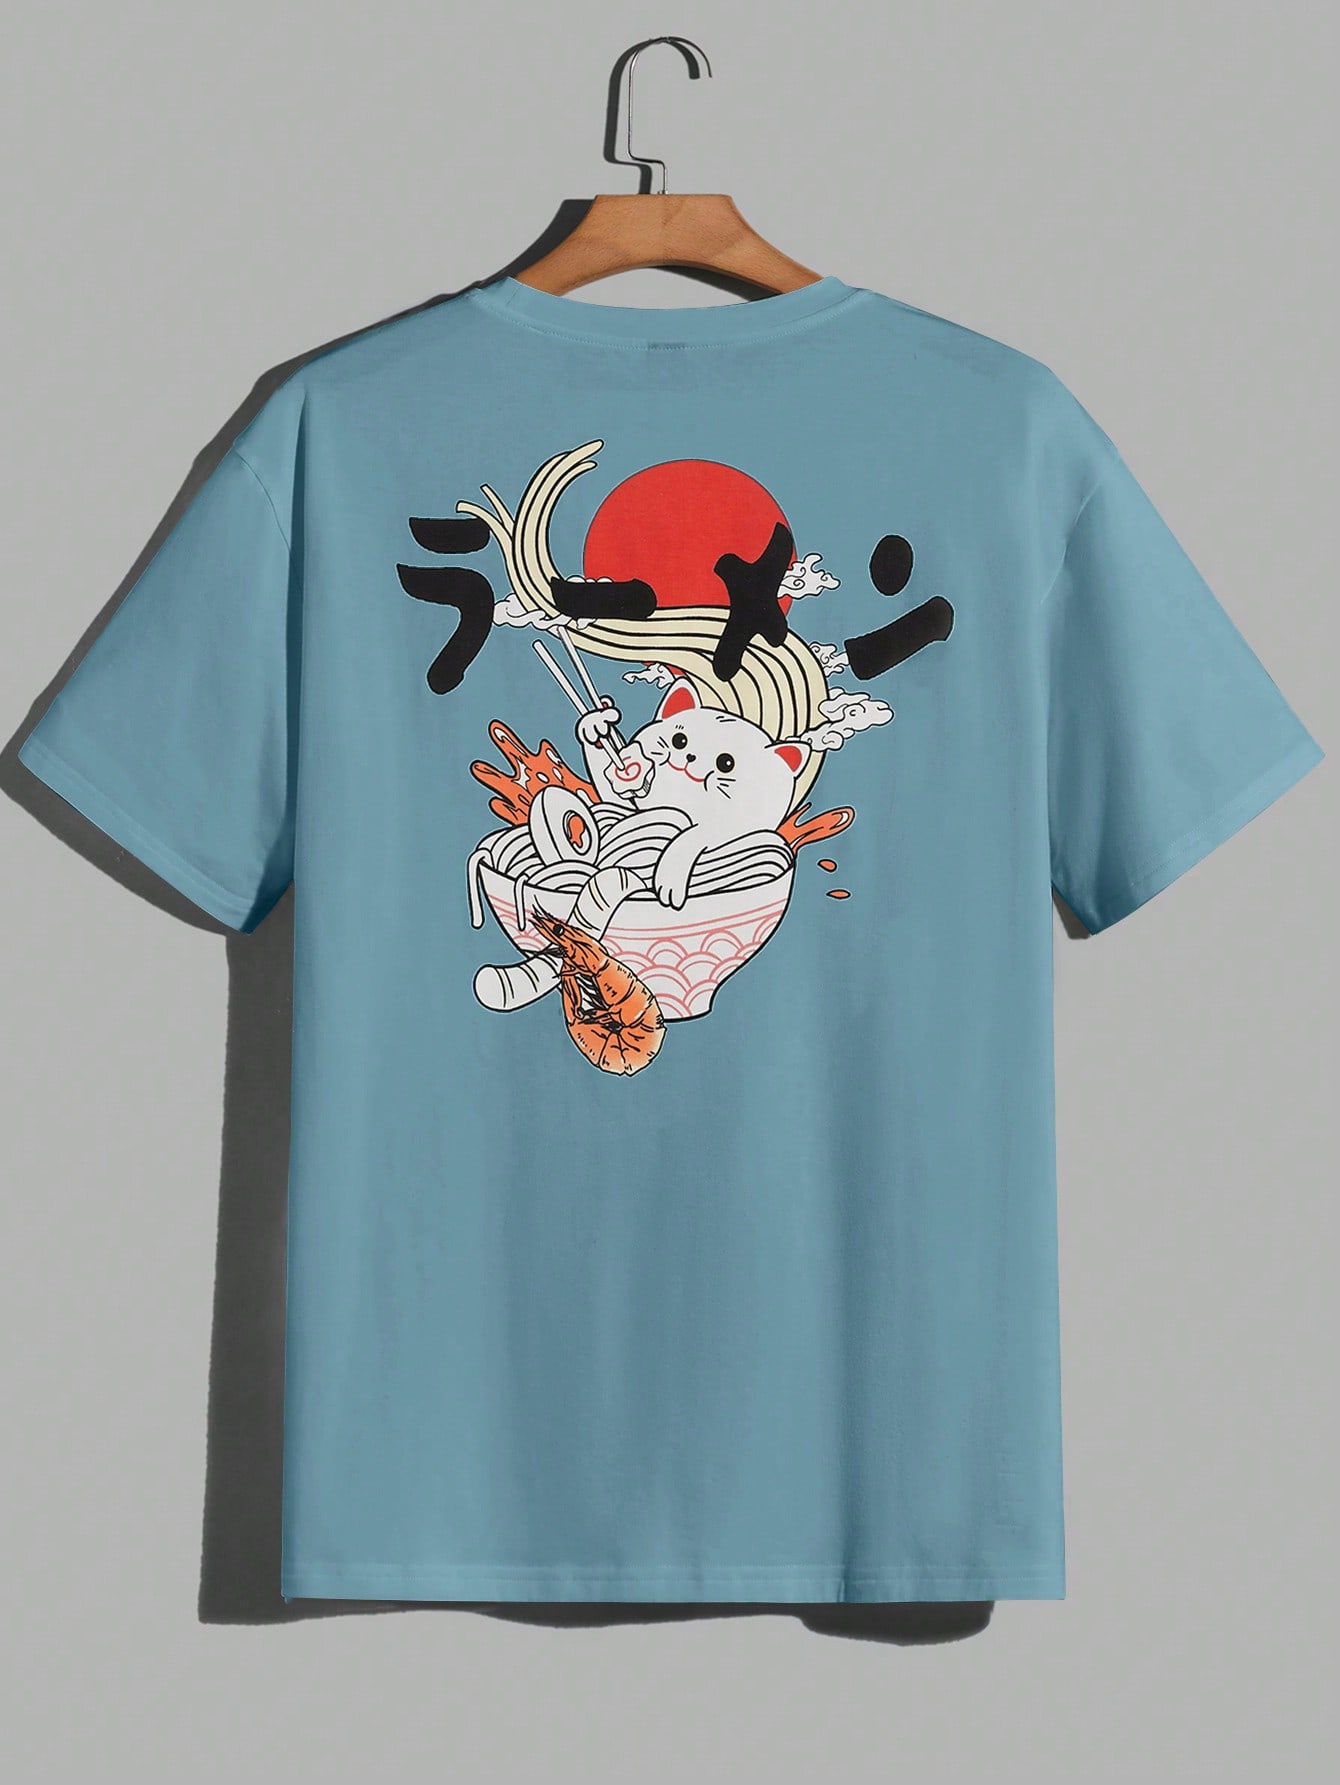 мужская футболка с забавным животным футболка с 3d принтом кота и коротким рукавом топы Мужская трикотажная повседневная футболка с короткими рукавами и принтом кота Manfinity EMRG, пыльный синий